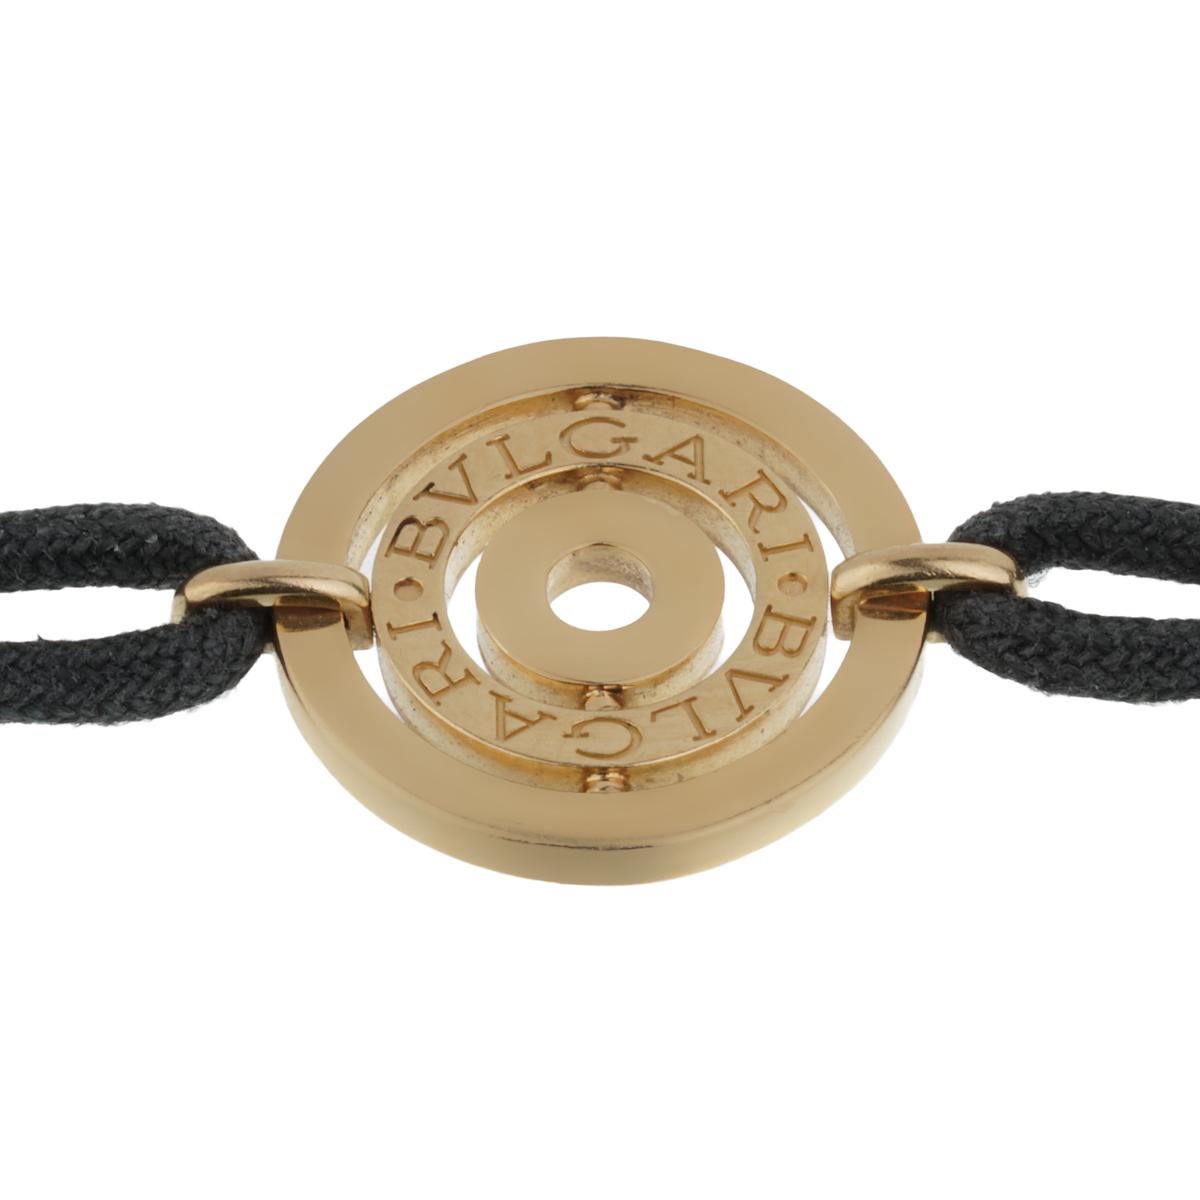 Un bracelet vintage Bulgari Astrale Cerci présentant le motif iconique Bulgari Bulgari sur un cordon en coton noir. Le bracelet mesure 6